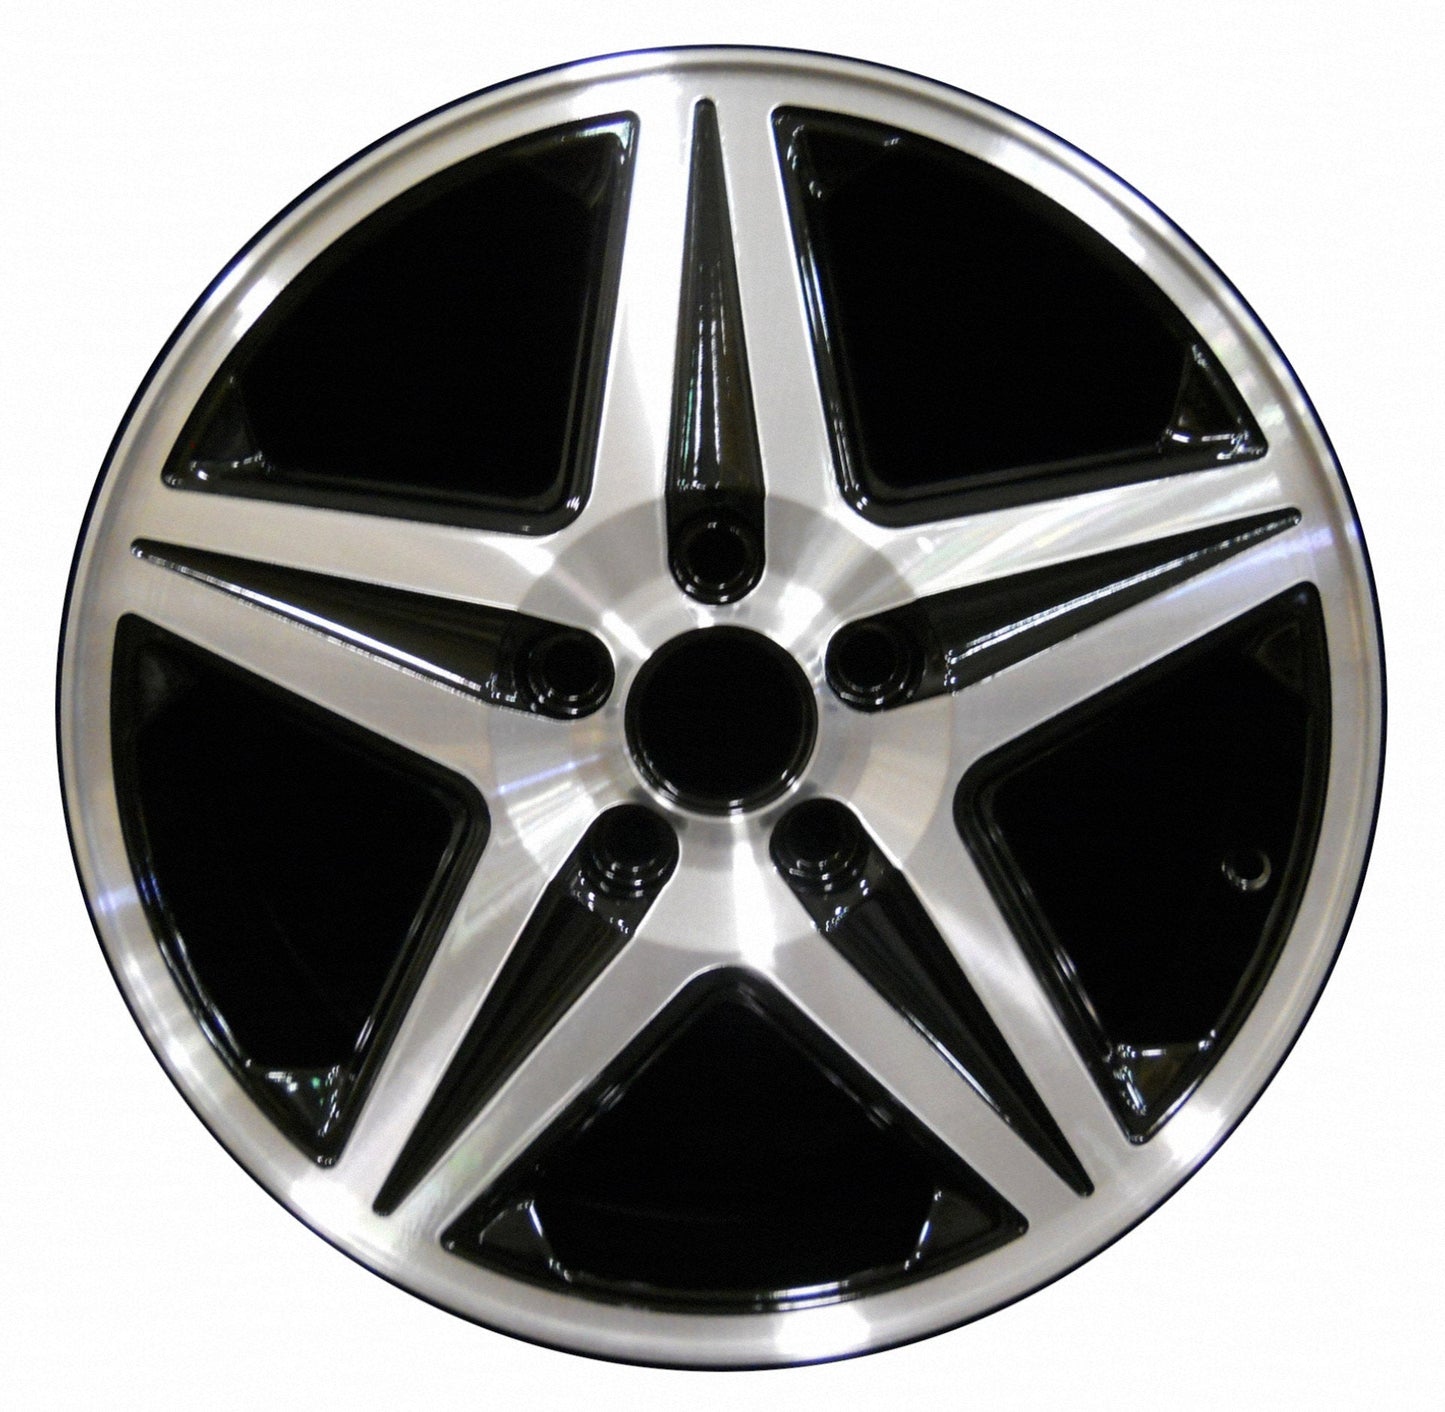 Chevrolet Impala  2004, 2005 Factory OEM Car Wheel Size 17x6.5 Alloy WAO.5187.PB01.MA